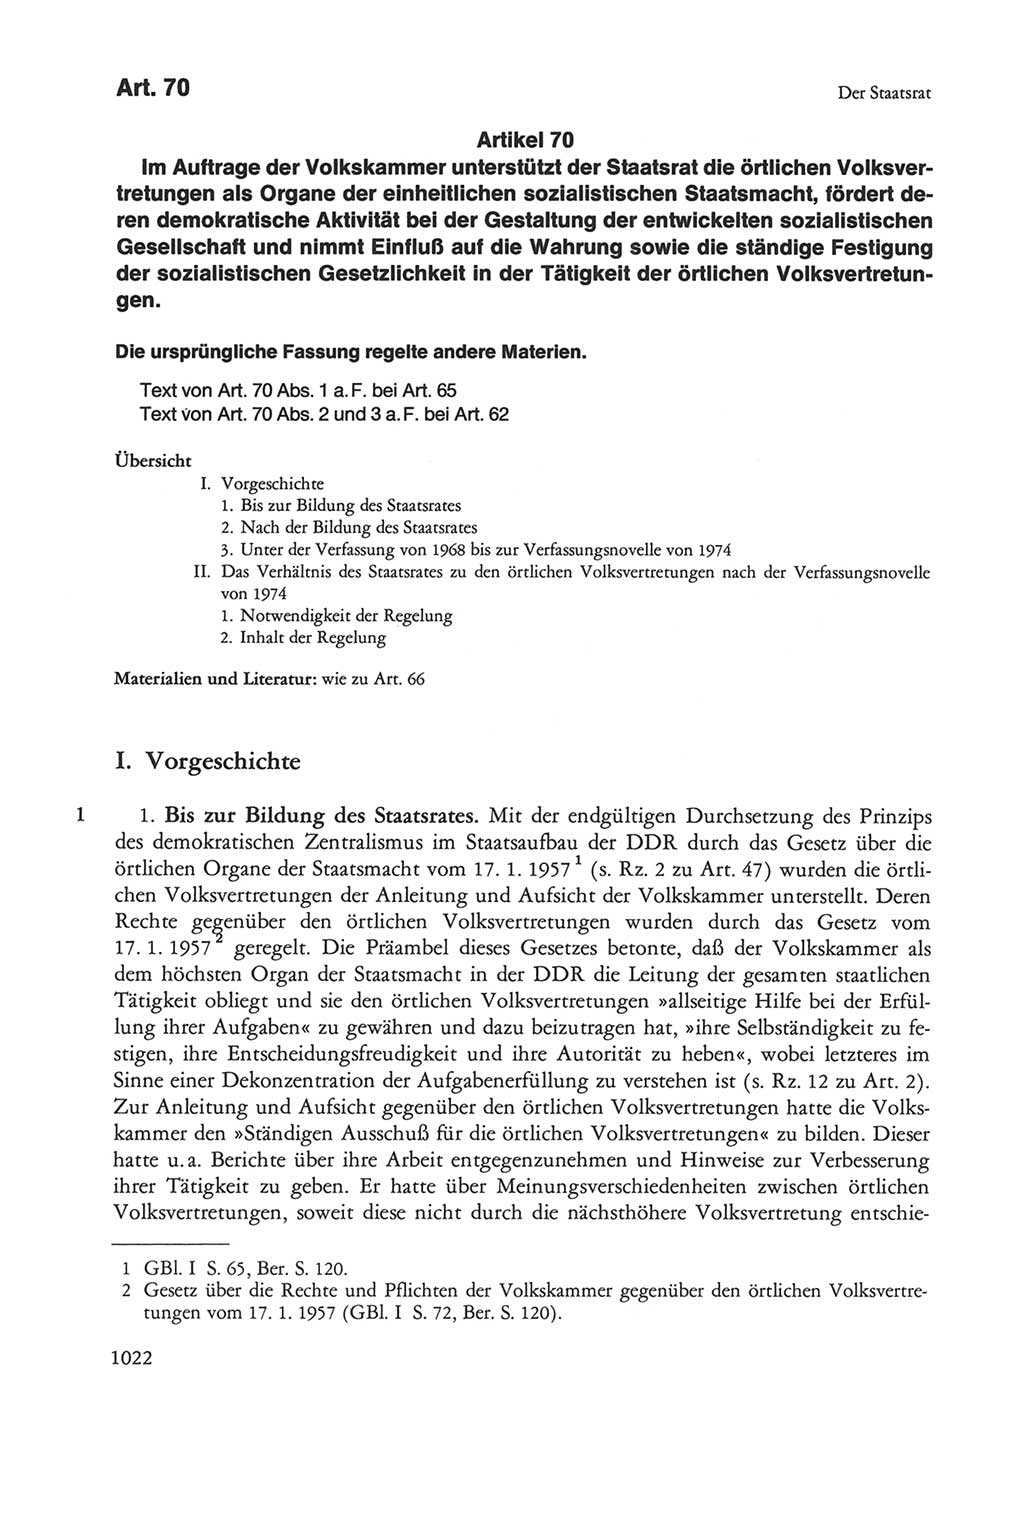 Die sozialistische Verfassung der Deutschen Demokratischen Republik (DDR), Kommentar 1982, Seite 1022 (Soz. Verf. DDR Komm. 1982, S. 1022)